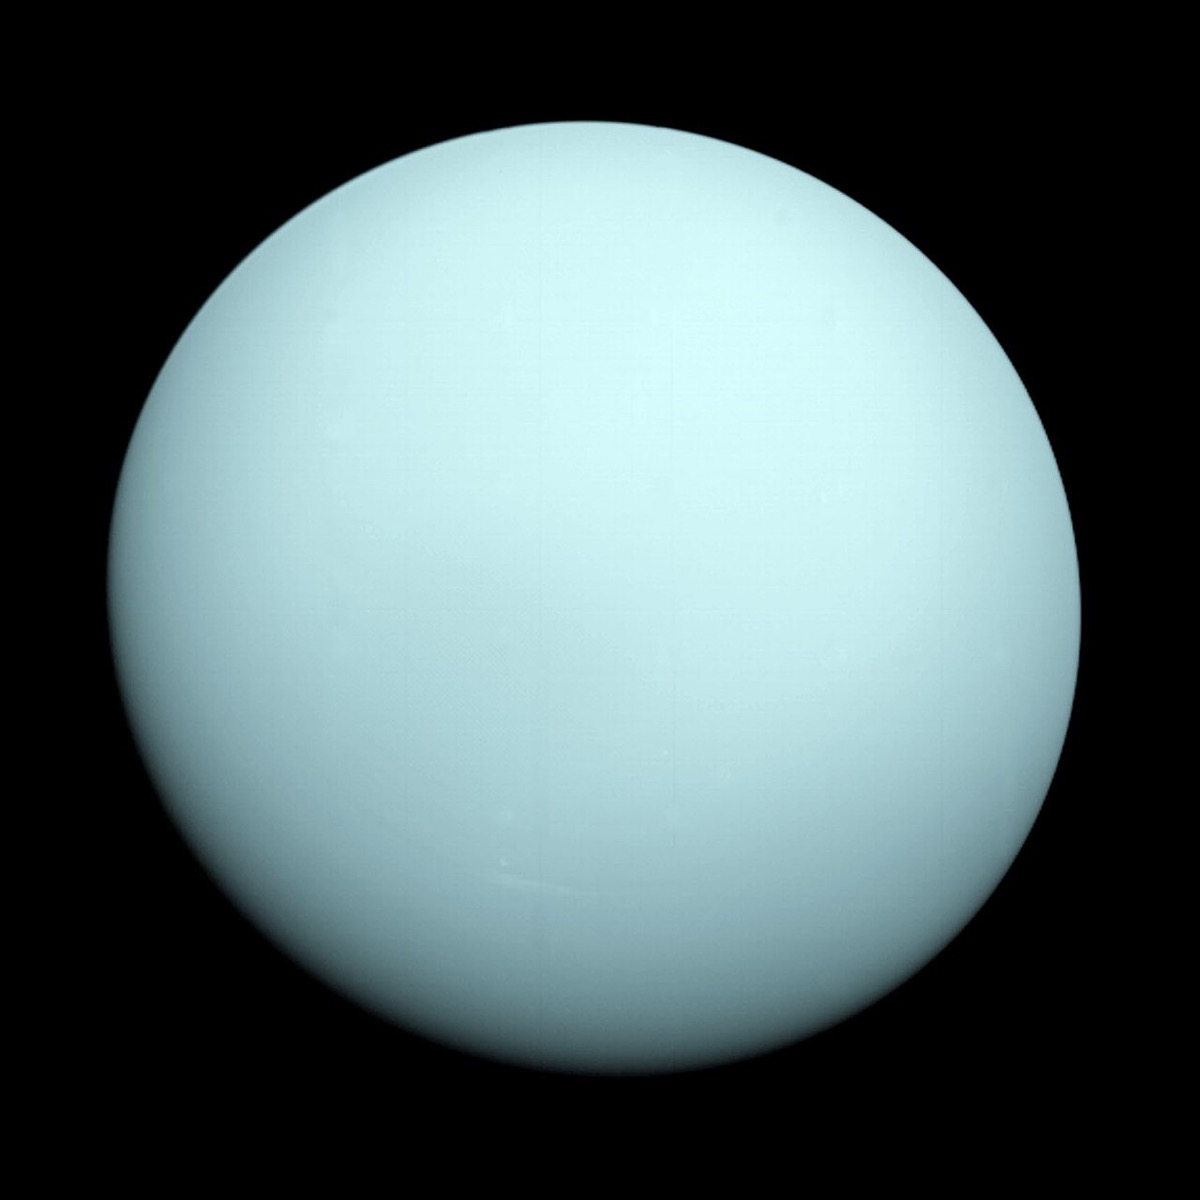 Uranus planet facts 2018